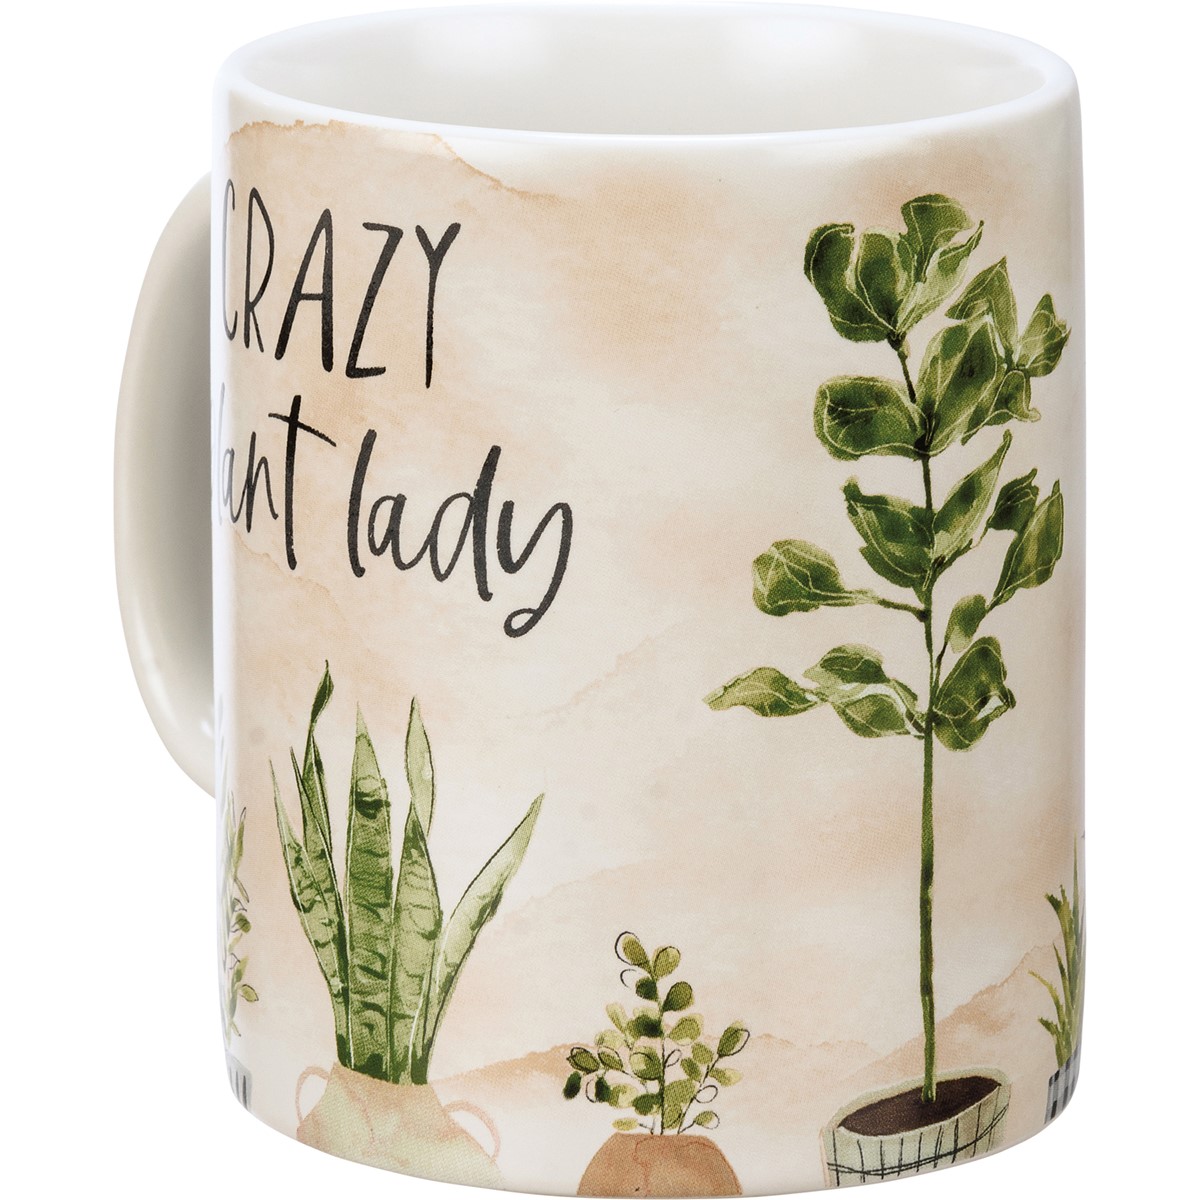 Crazy Plant Lady Mug - Stoneware